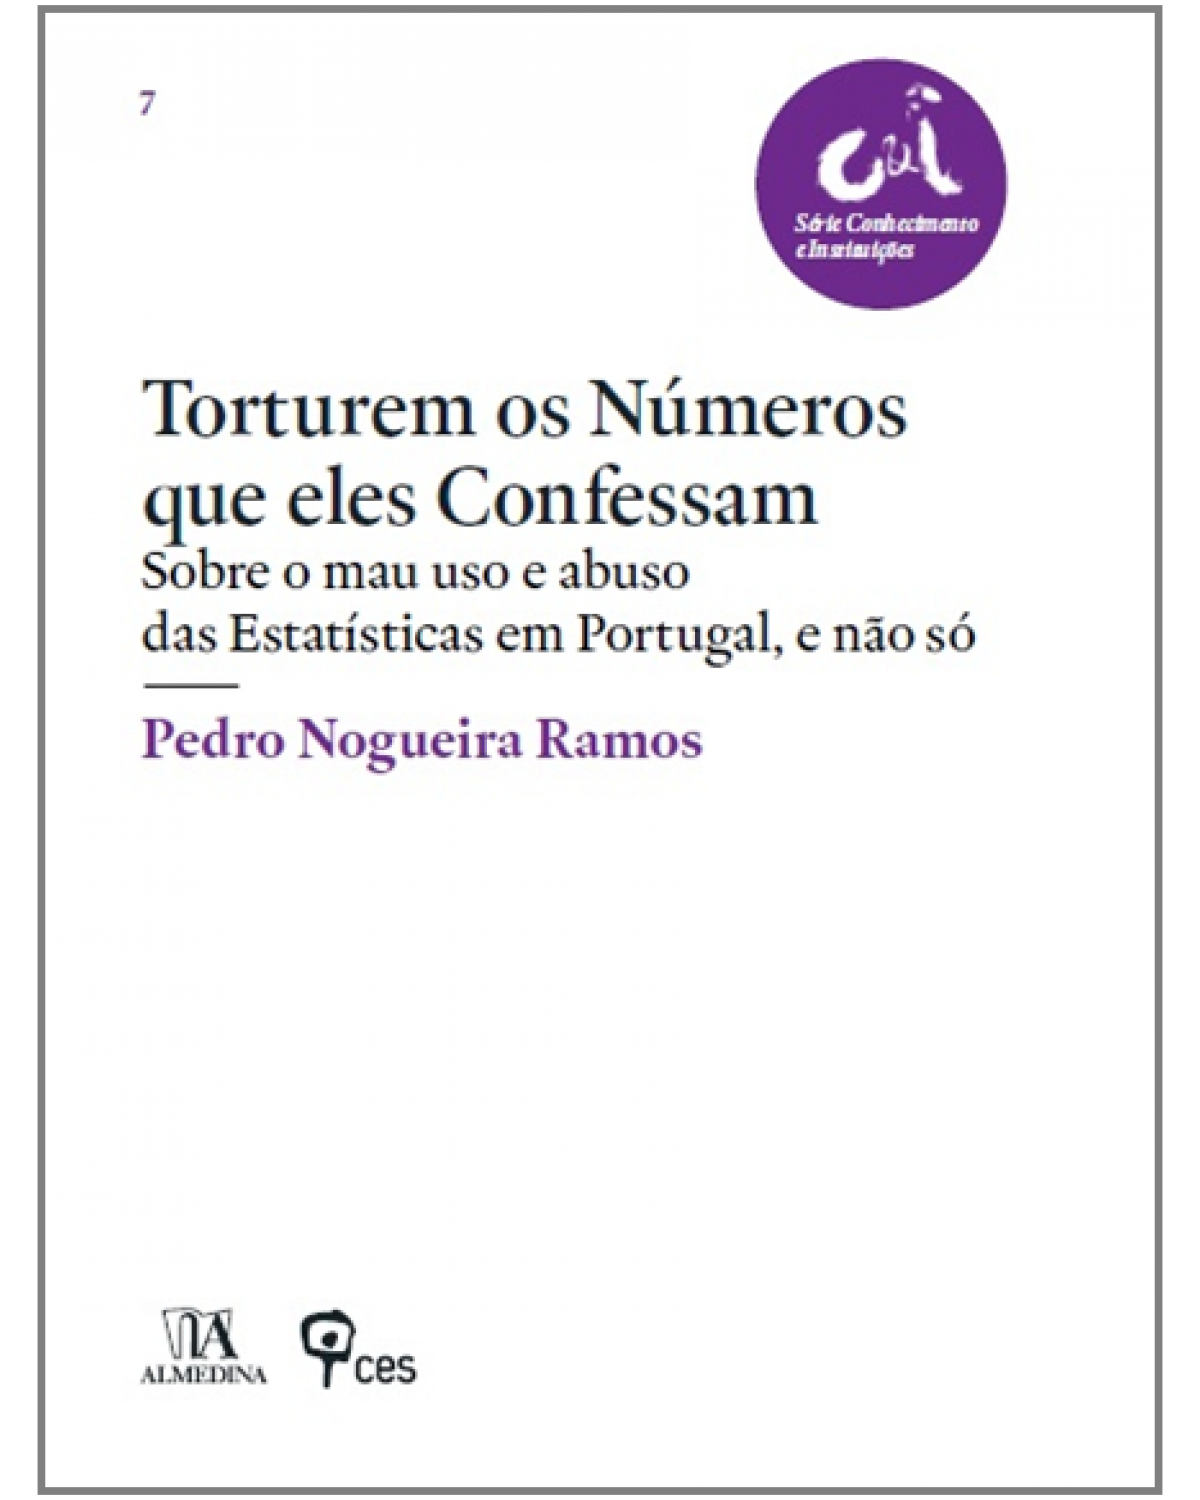 Torturem os números que eles confessam  - sobre o mau uso e abuso das estatísticas em Portugal, e não só - 1ª Edição | 2013